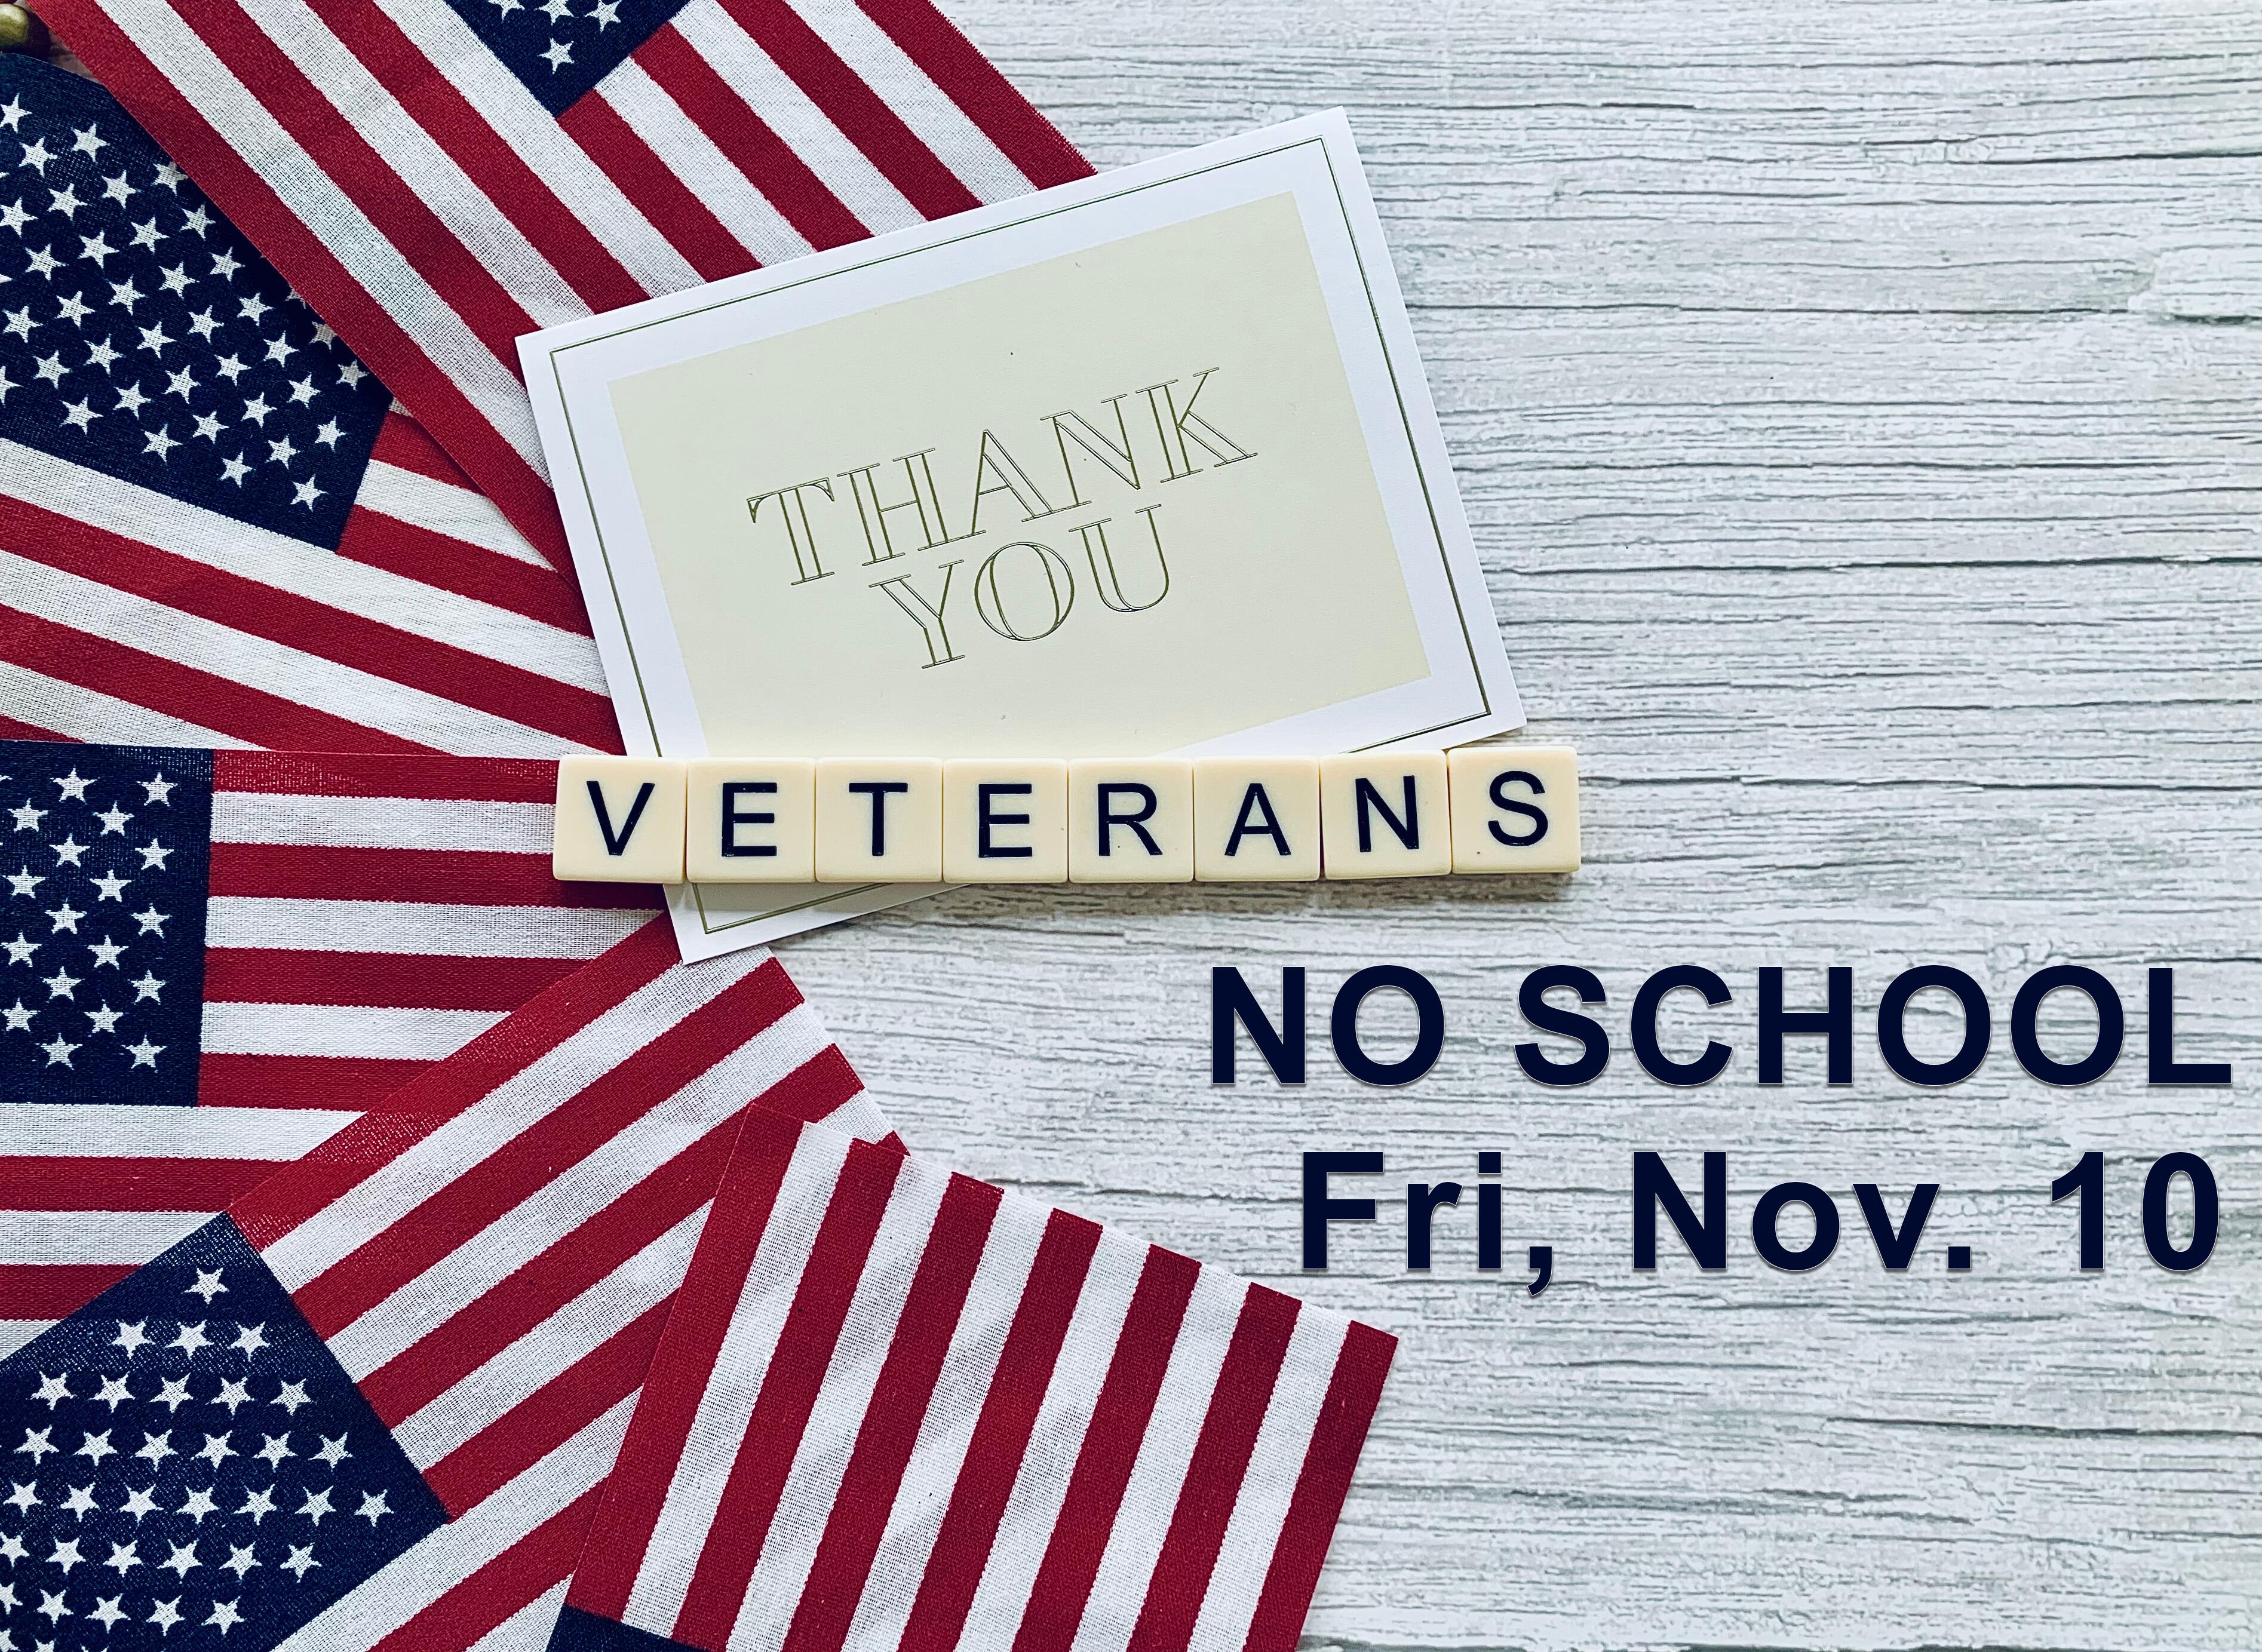 Veteran's day Nov 10, no school